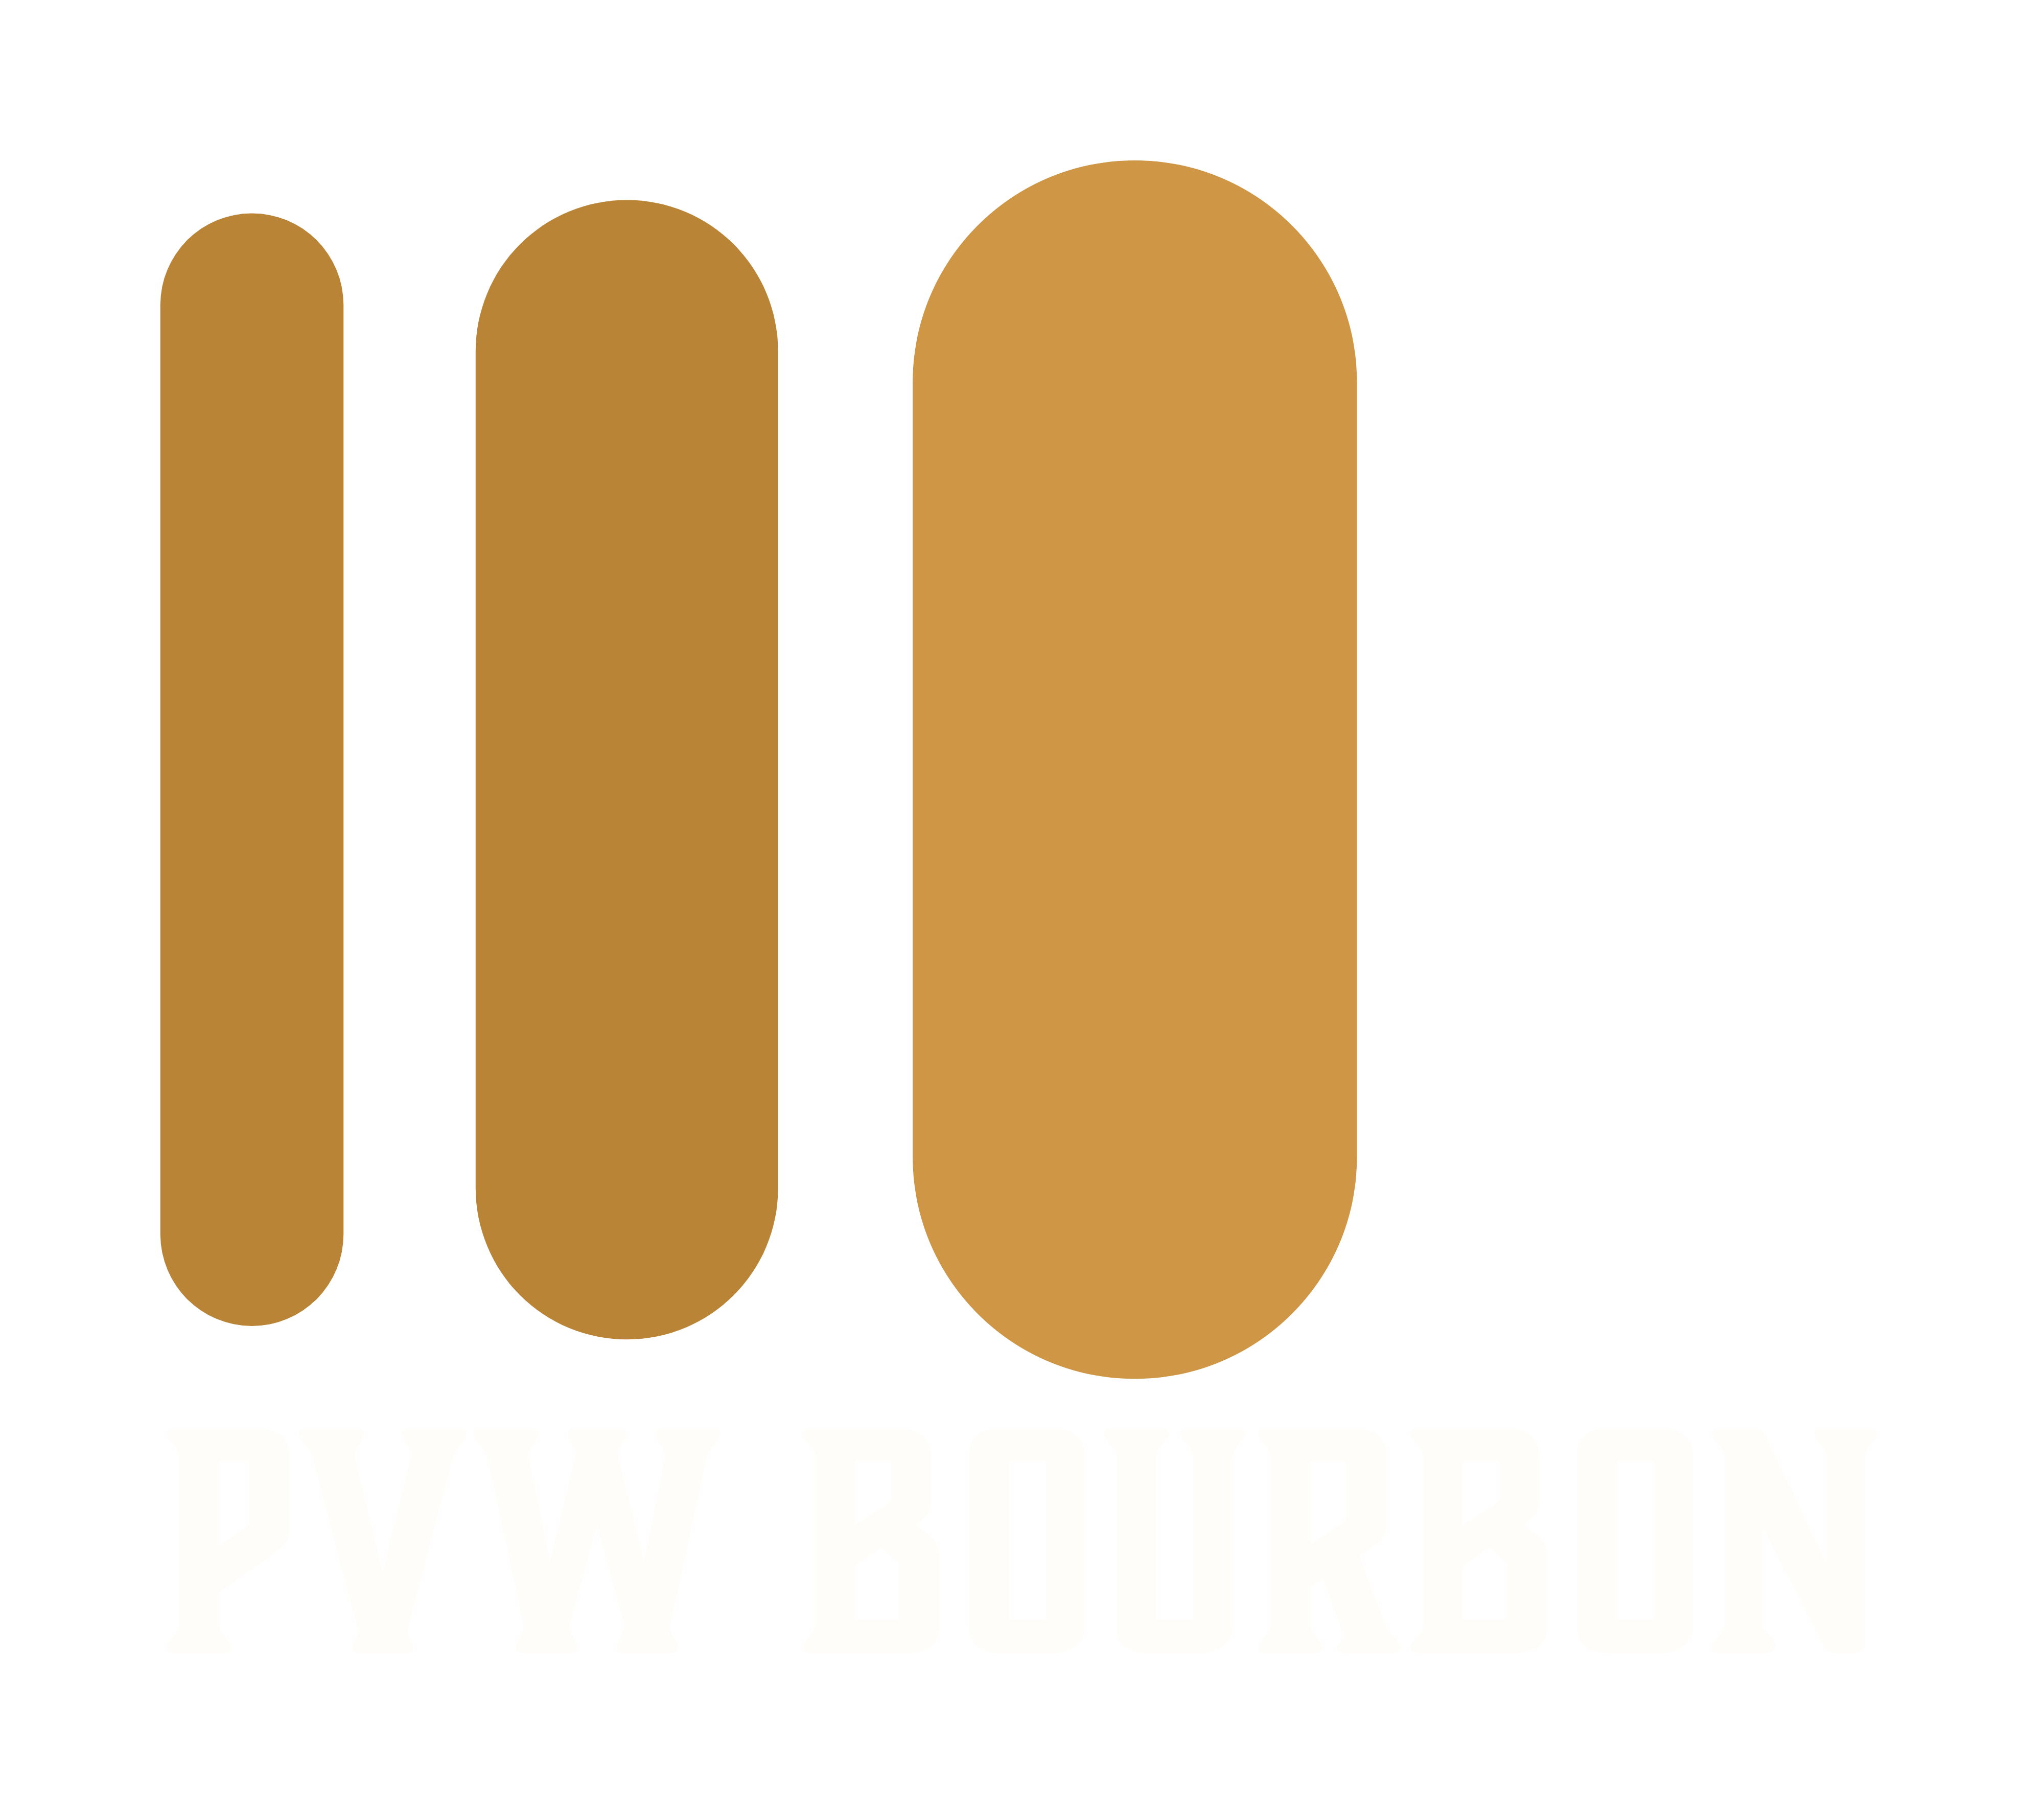 PVW Bourbon